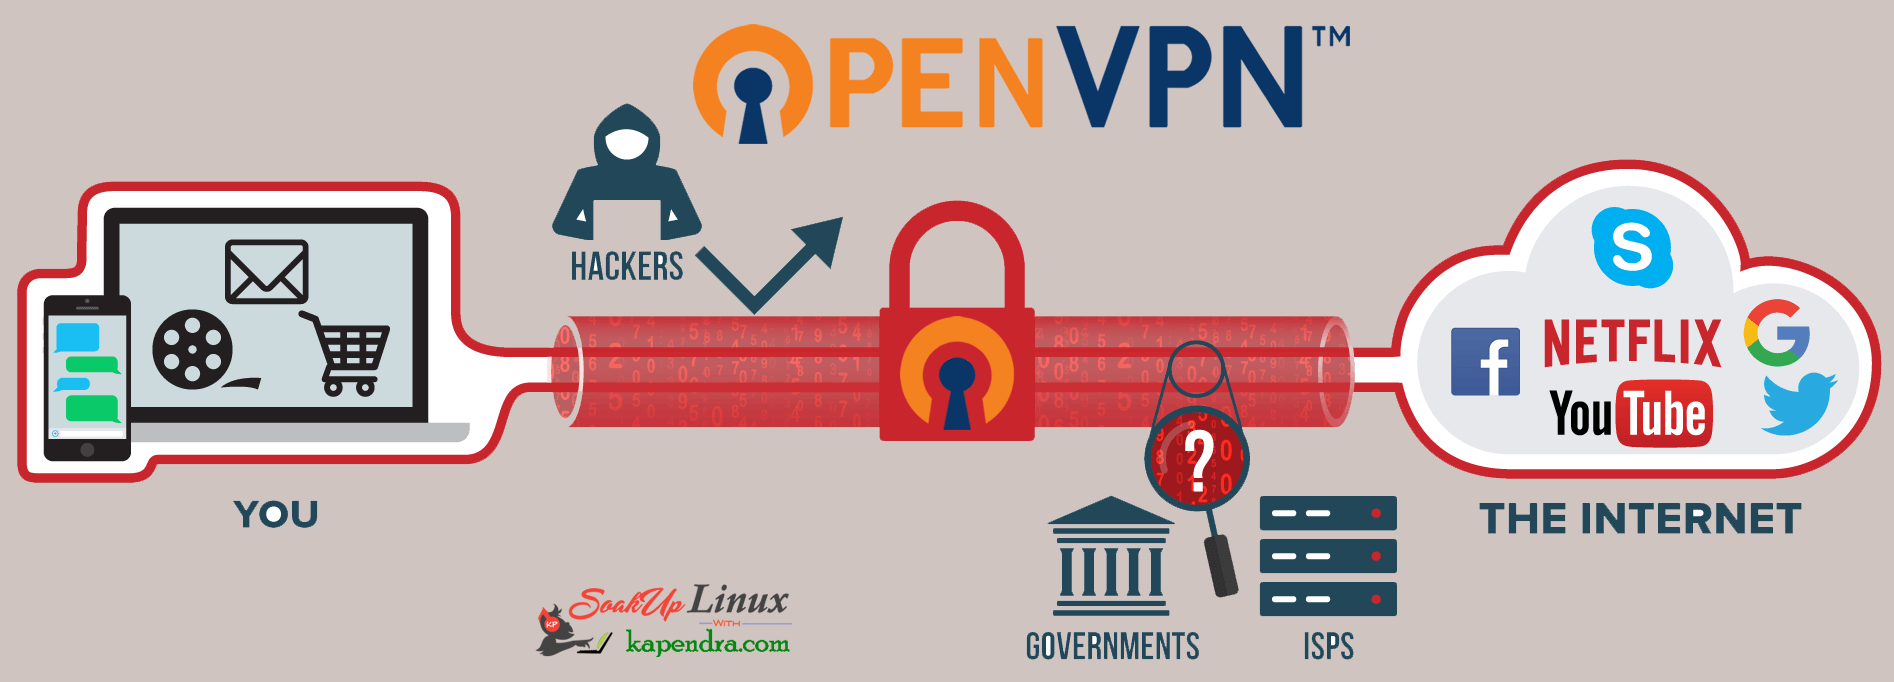 An VPN illustration